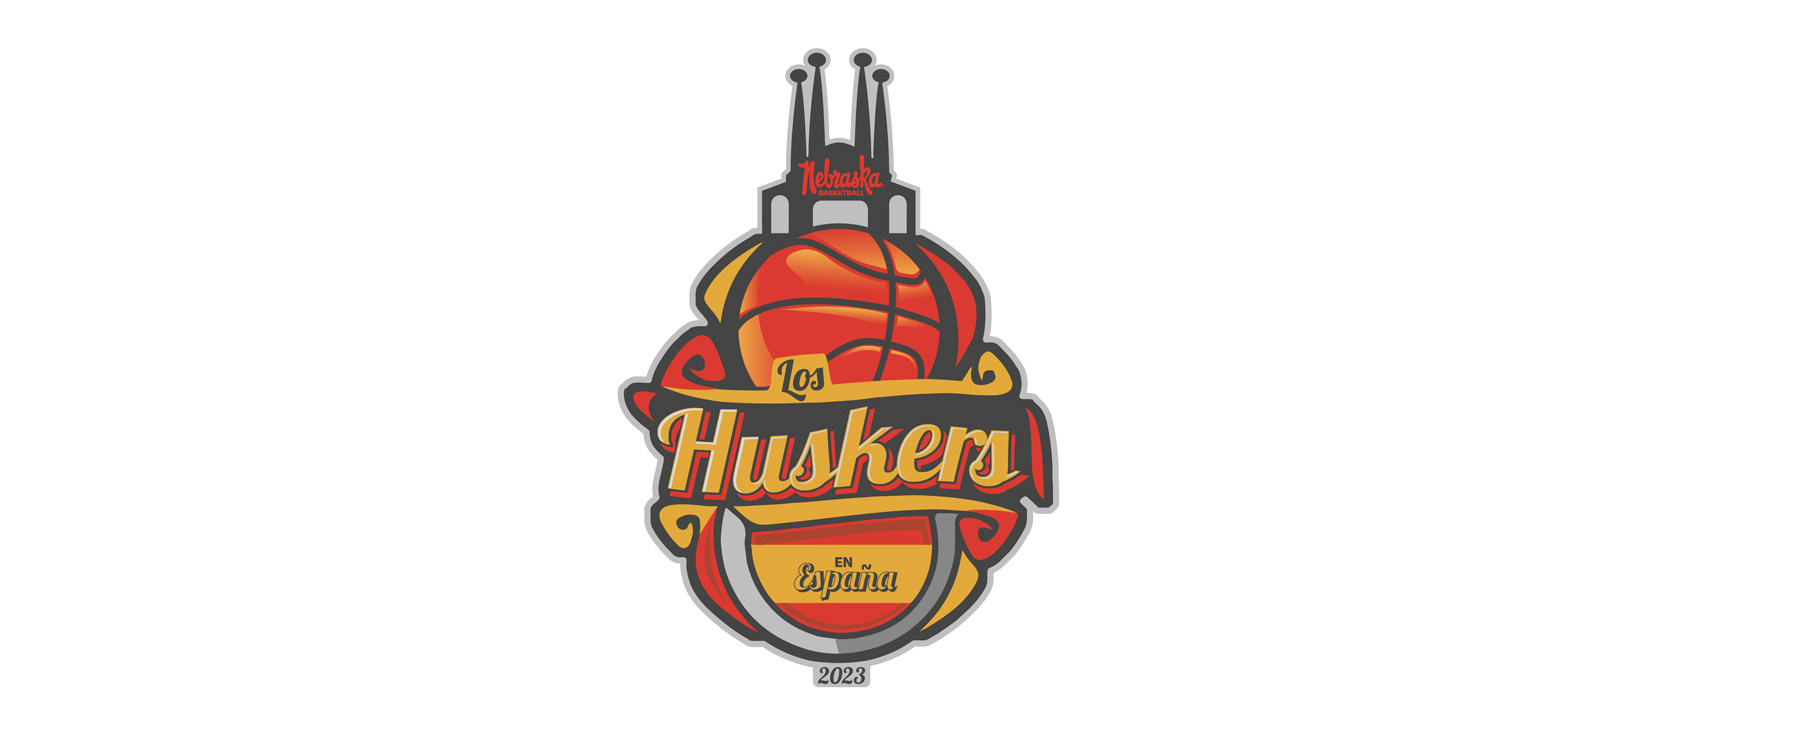 Husker hoops llega a España esta semana – University of Nebraska